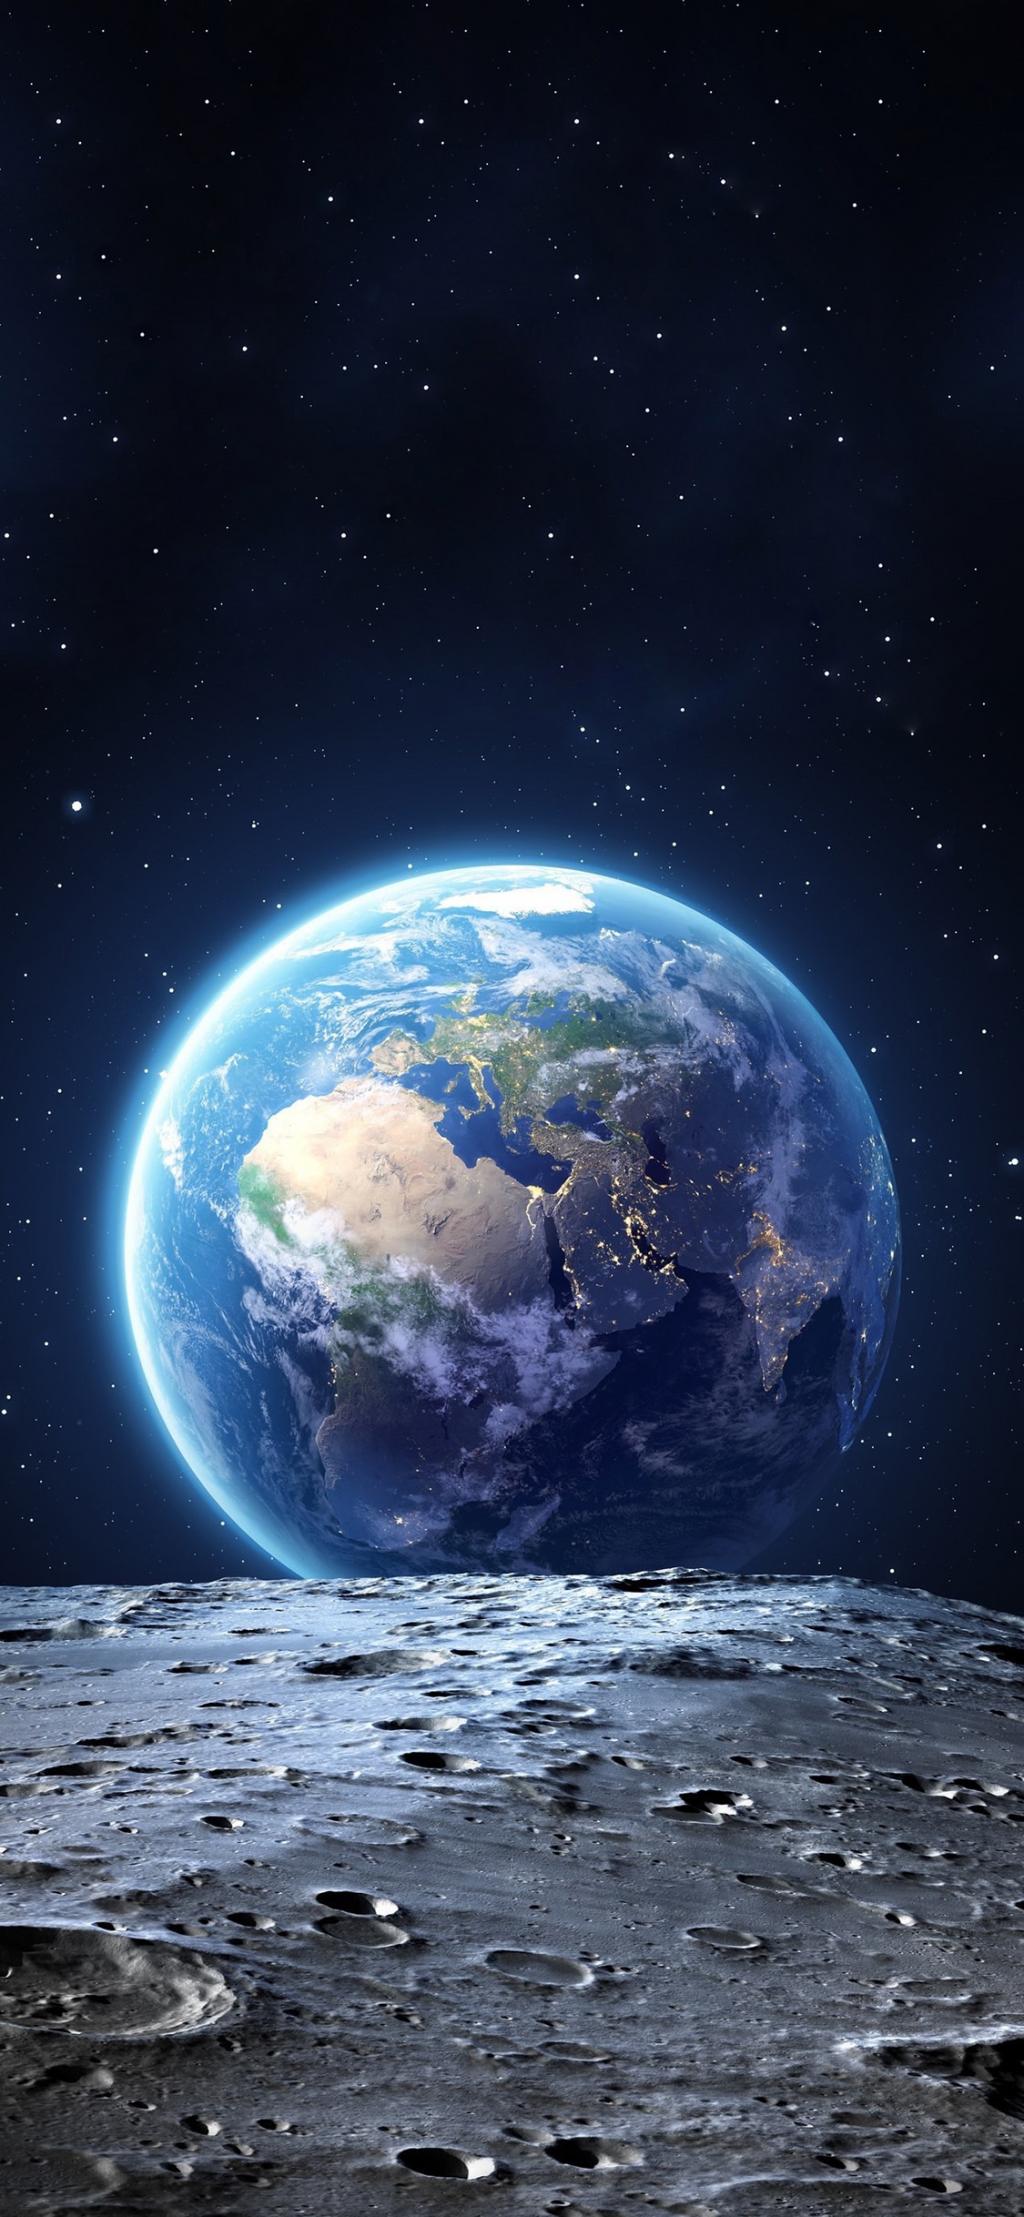 iPhone壁纸高清星球图片